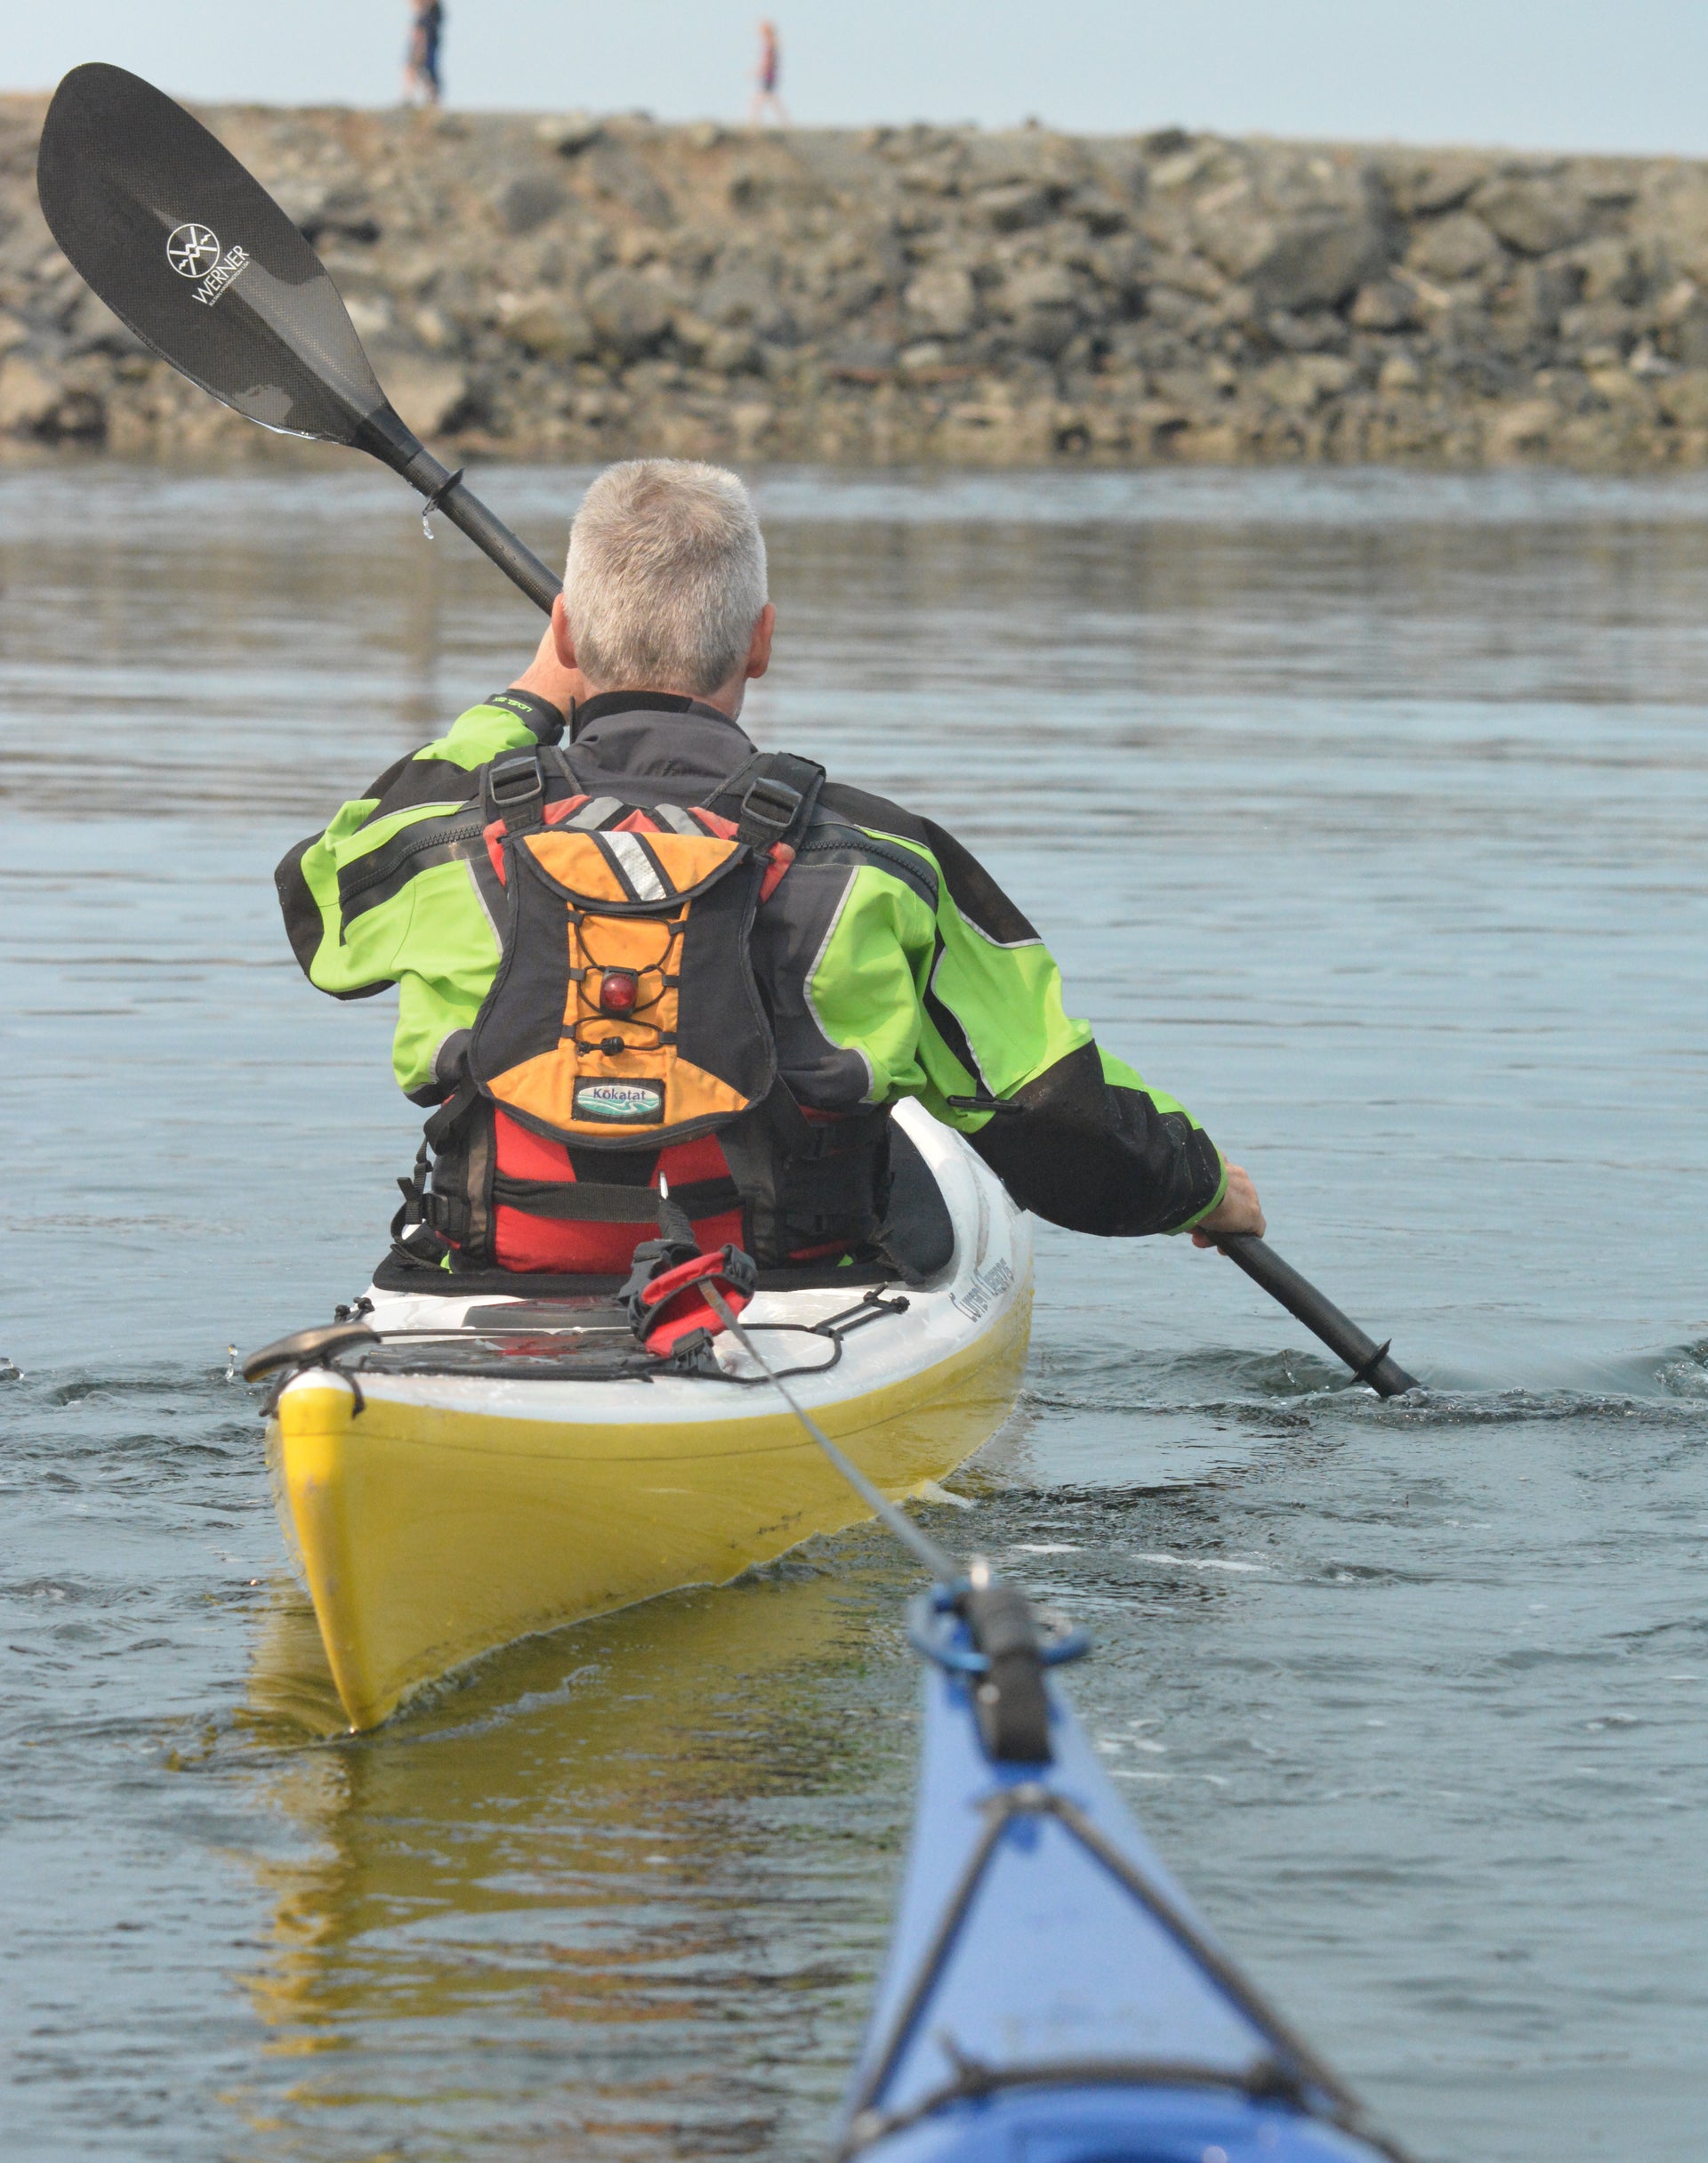 Wear a PFD when on the water in a kayak! : r/FishingForBeginners